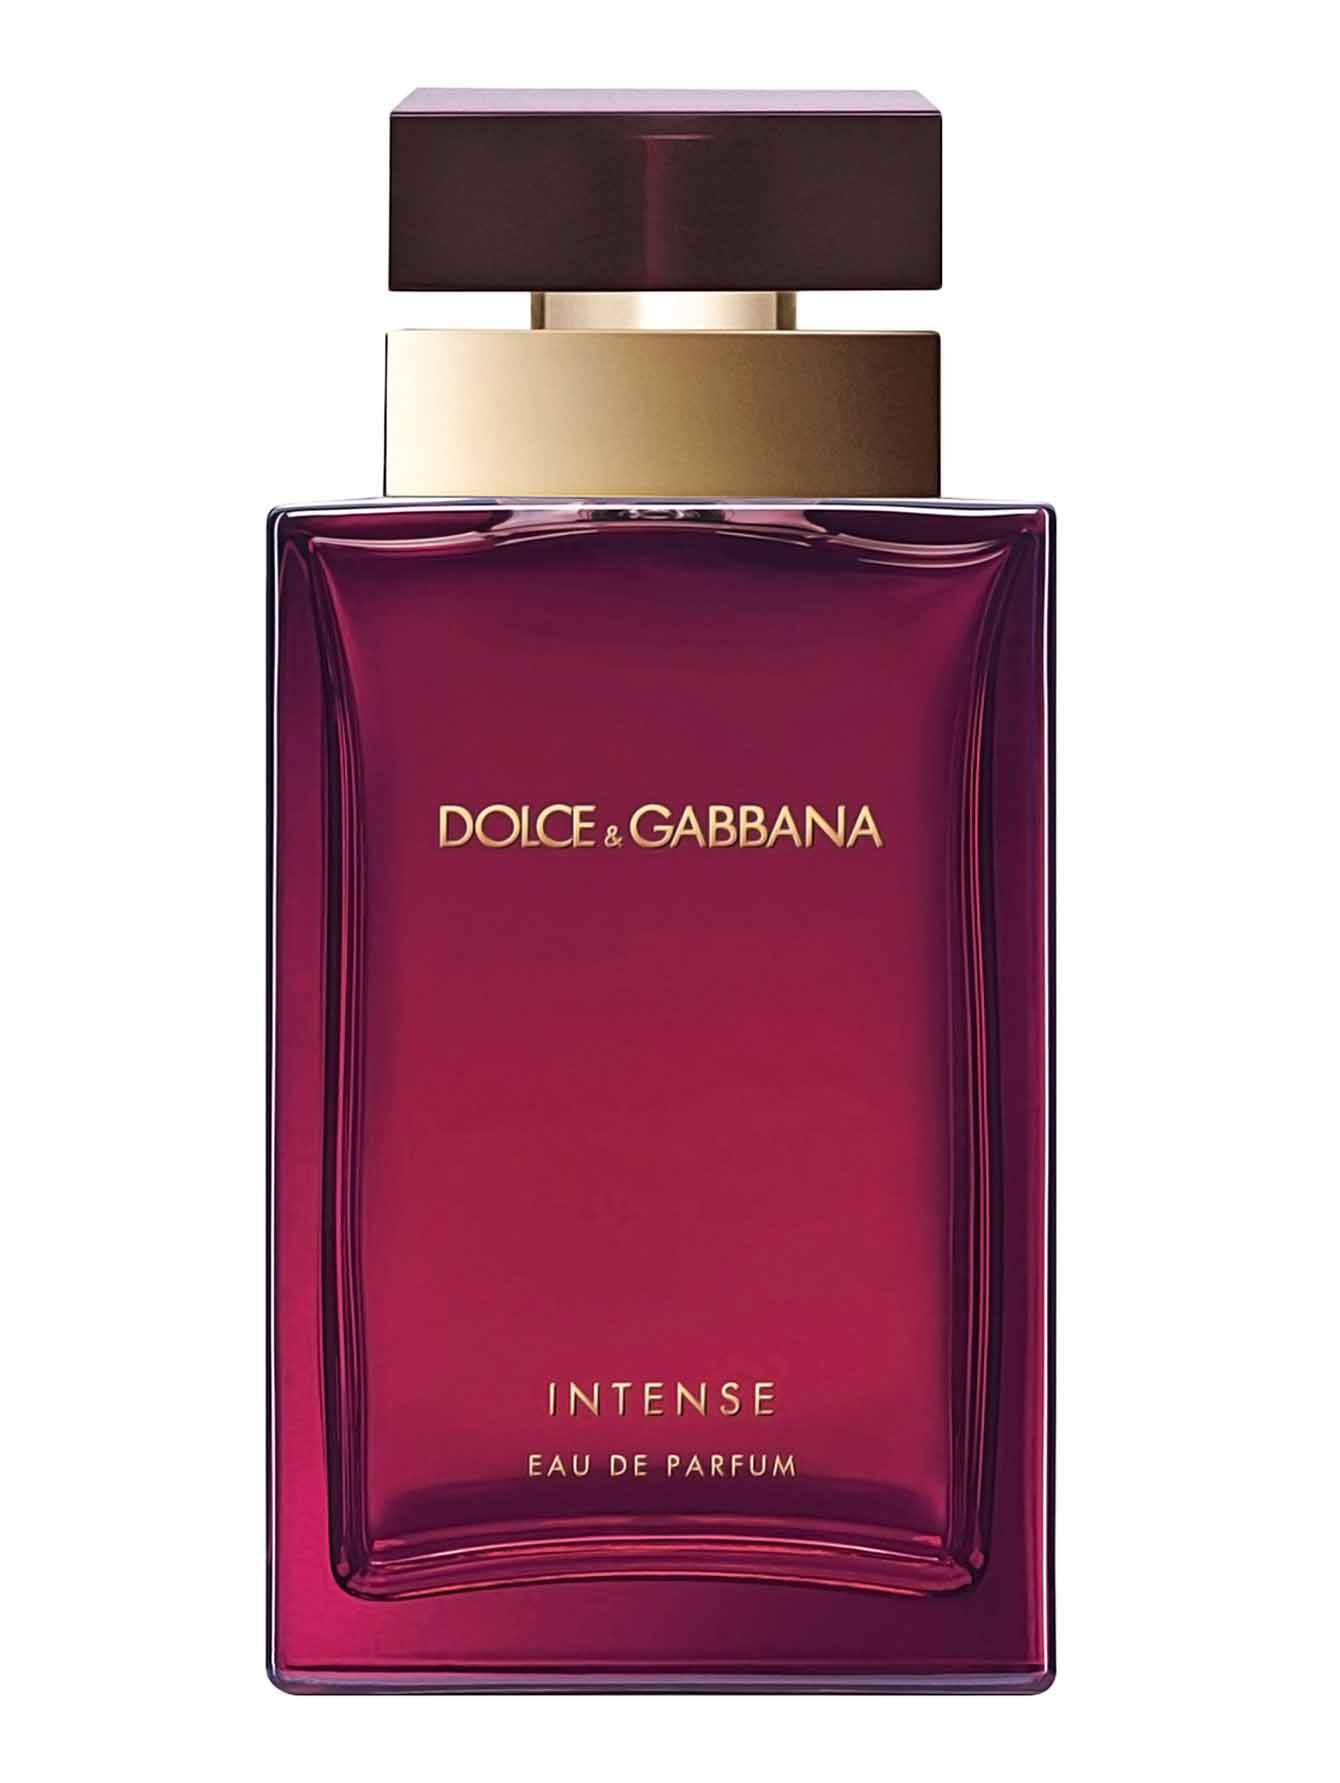 Дольче габбана цена фото. Dolce & Gabbana pour femme 100 мл. Дольче Габбана Интенс. Dolce&Gabbana pour femme intense. Dolce Gabbana intense женские 100ml.